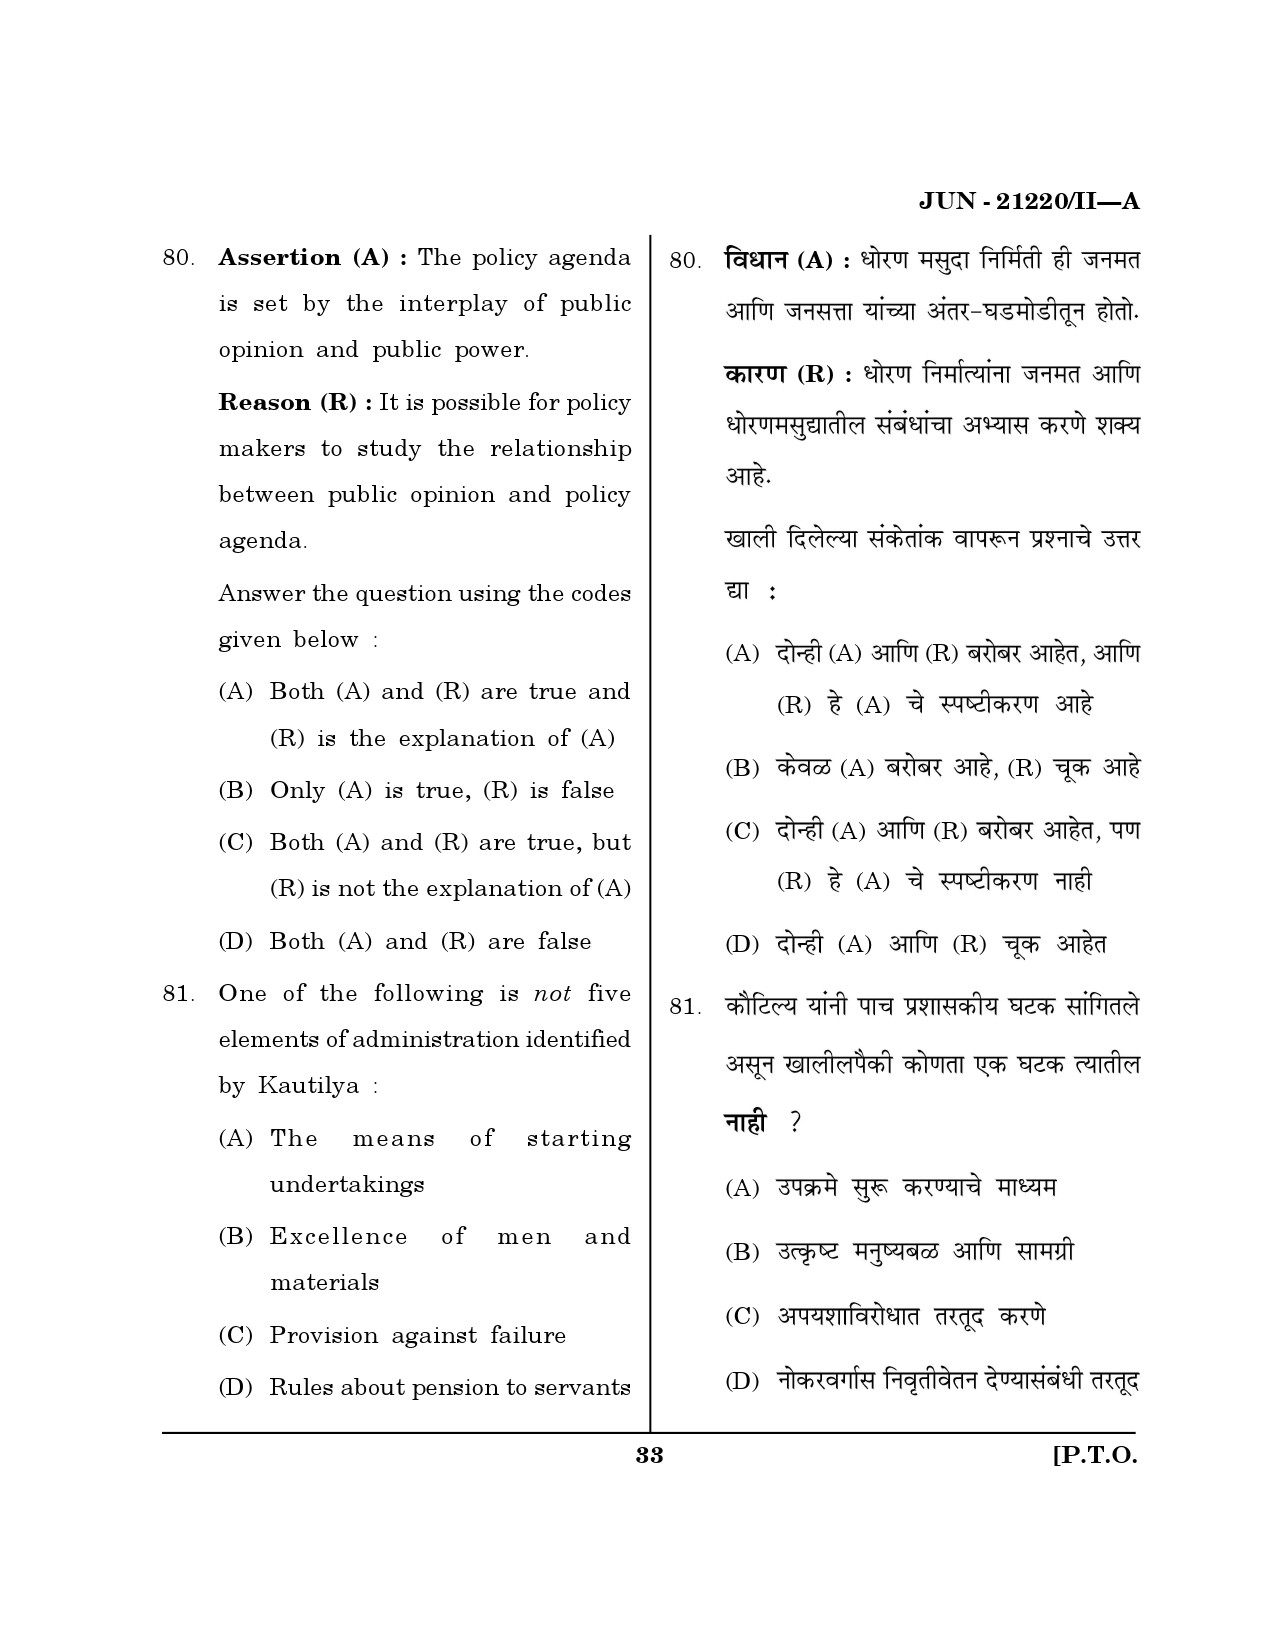 Maharashtra SET Public Administration Question Paper II June 2020 32